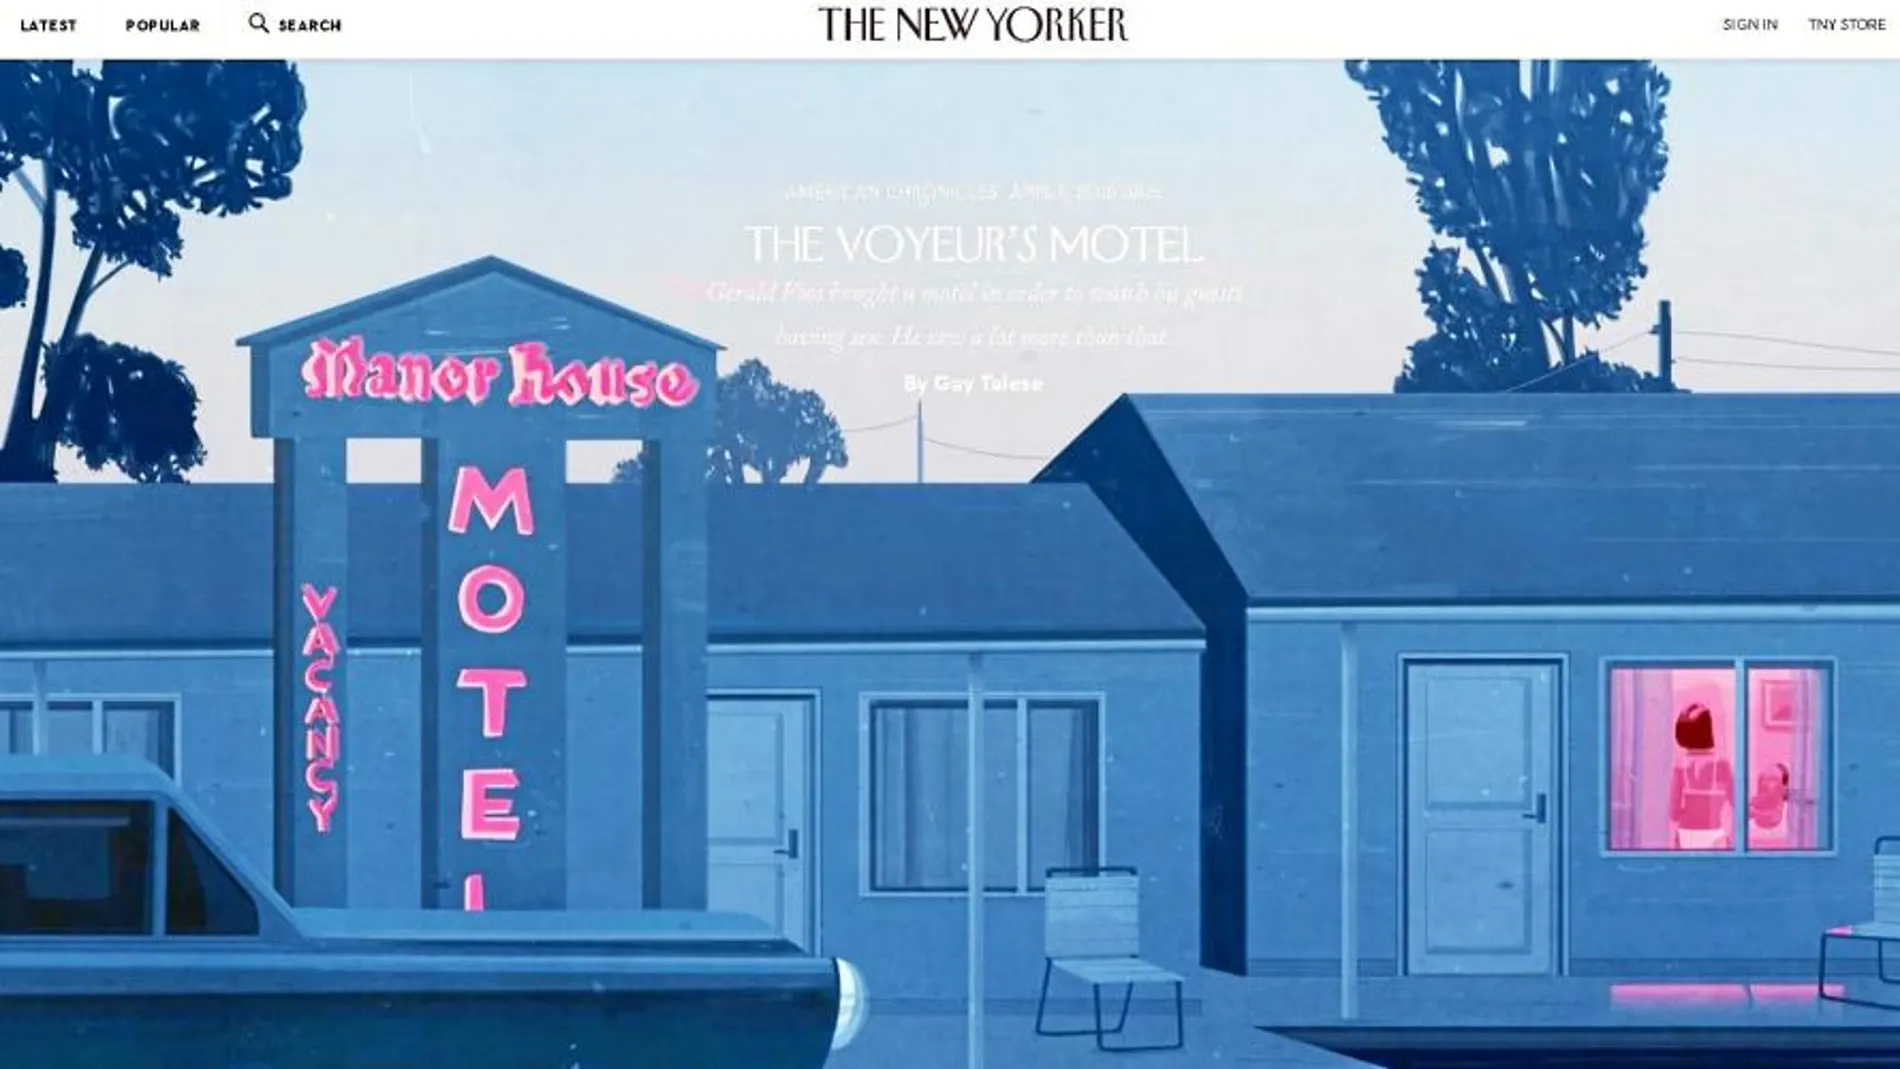 Imagen promocional de «The New Yorker» del libro